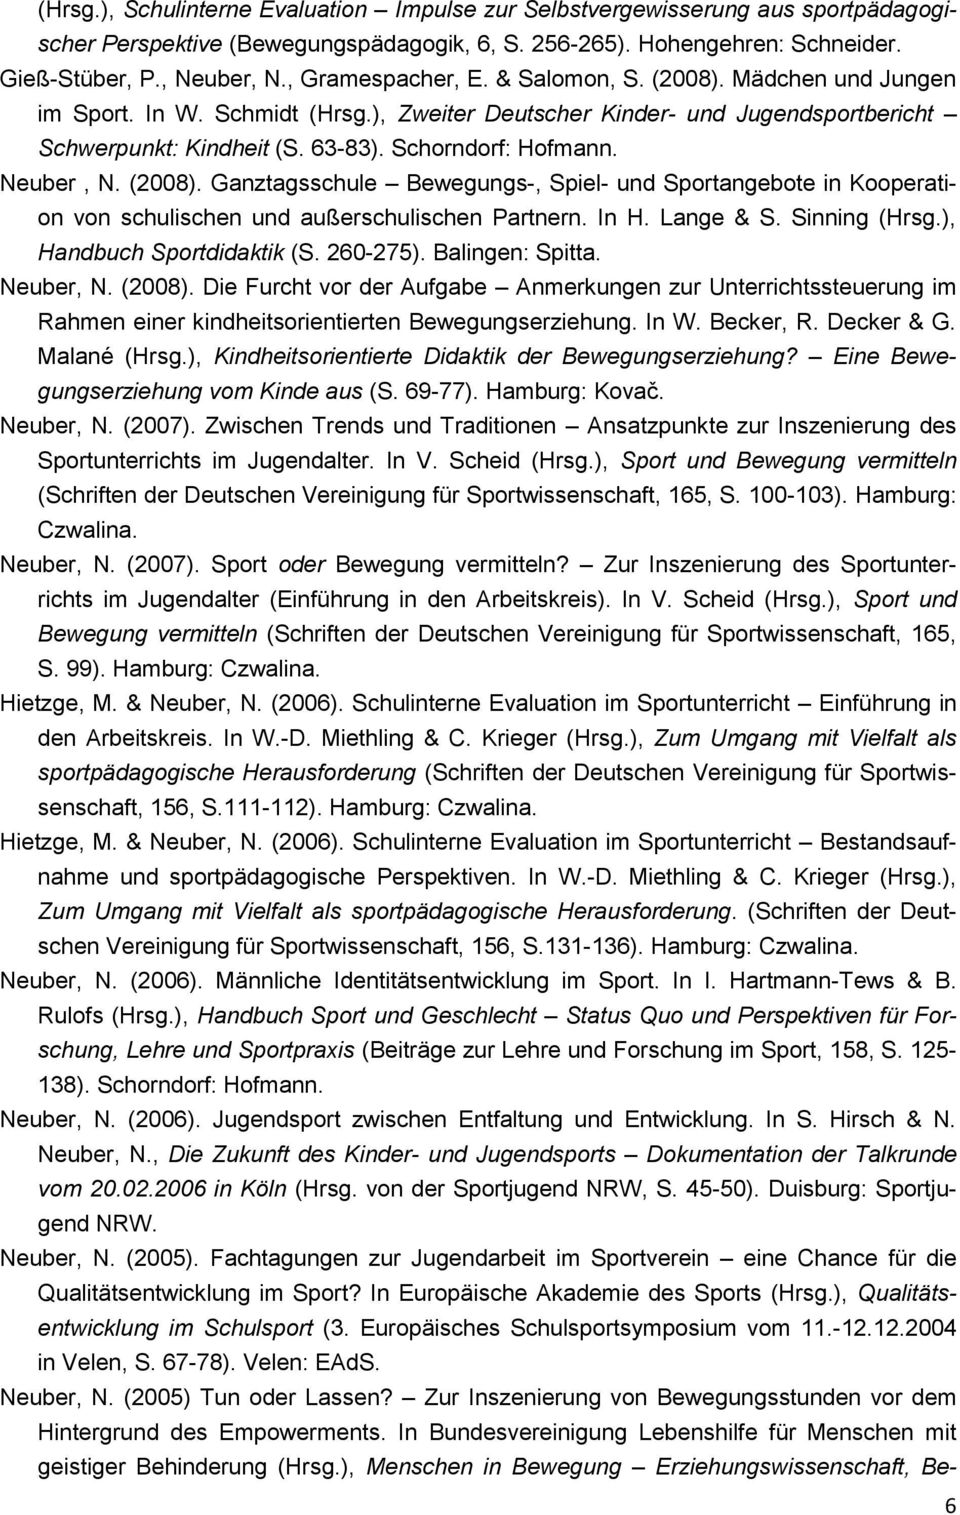 Neuber, N. (2008). Ganztagsschule Bewegungs-, Spiel- und Sportangebote in Kooperation von schulischen und außerschulischen Partnern. In H. Lange & S. Sinning (Hrsg.), Handbuch Sportdidaktik (S.